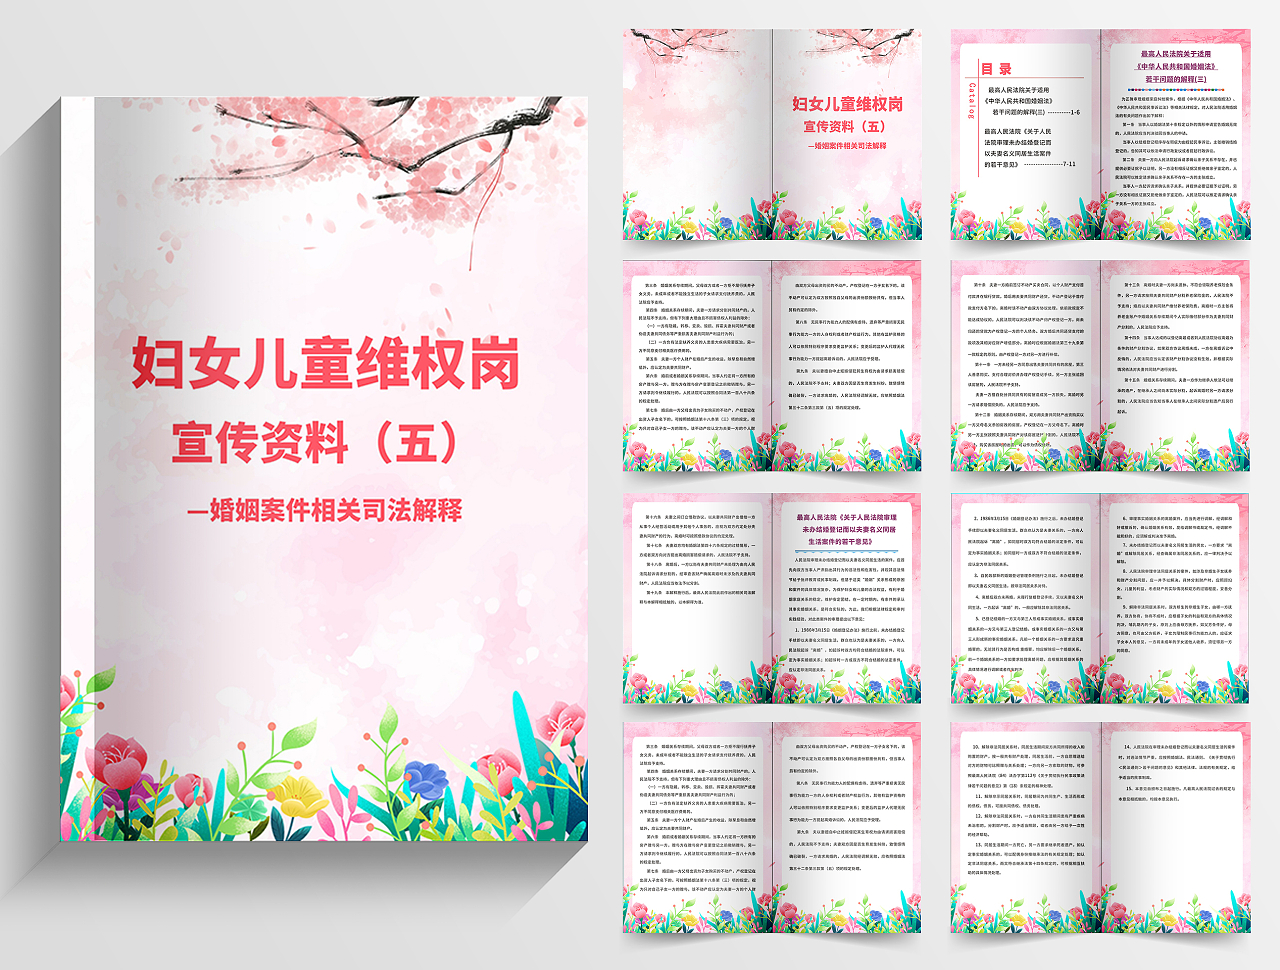 粉色温馨简约法律手册妇女儿童维权岗宣传资料法律画册